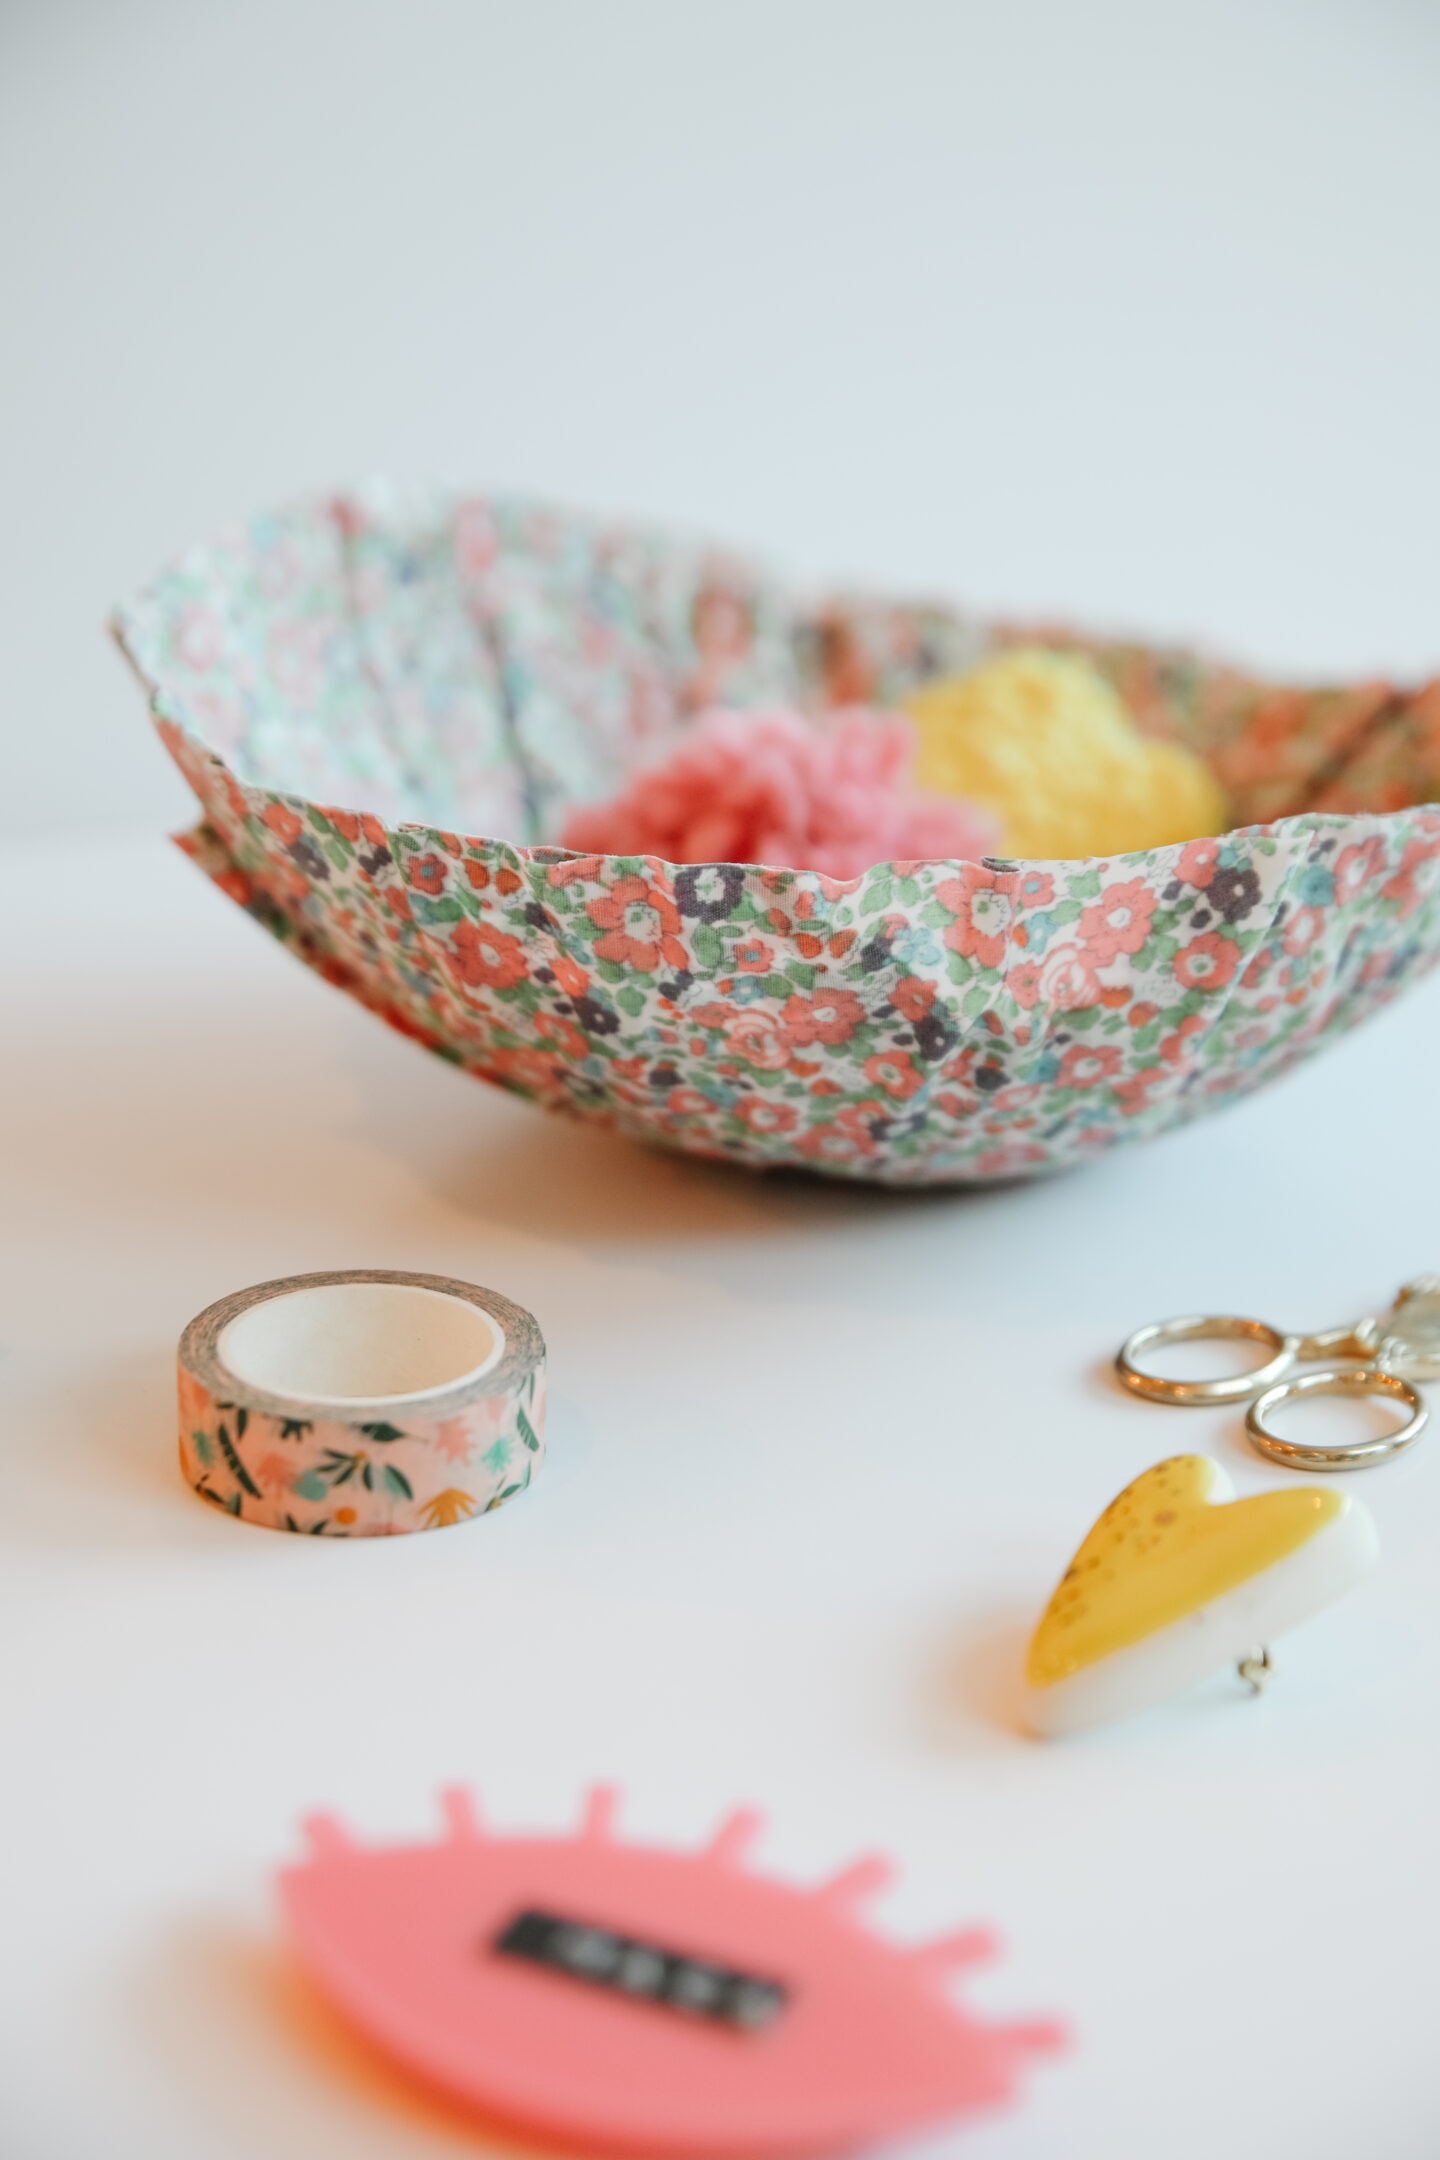 DIY fabric bowls using the papier mache tecnique